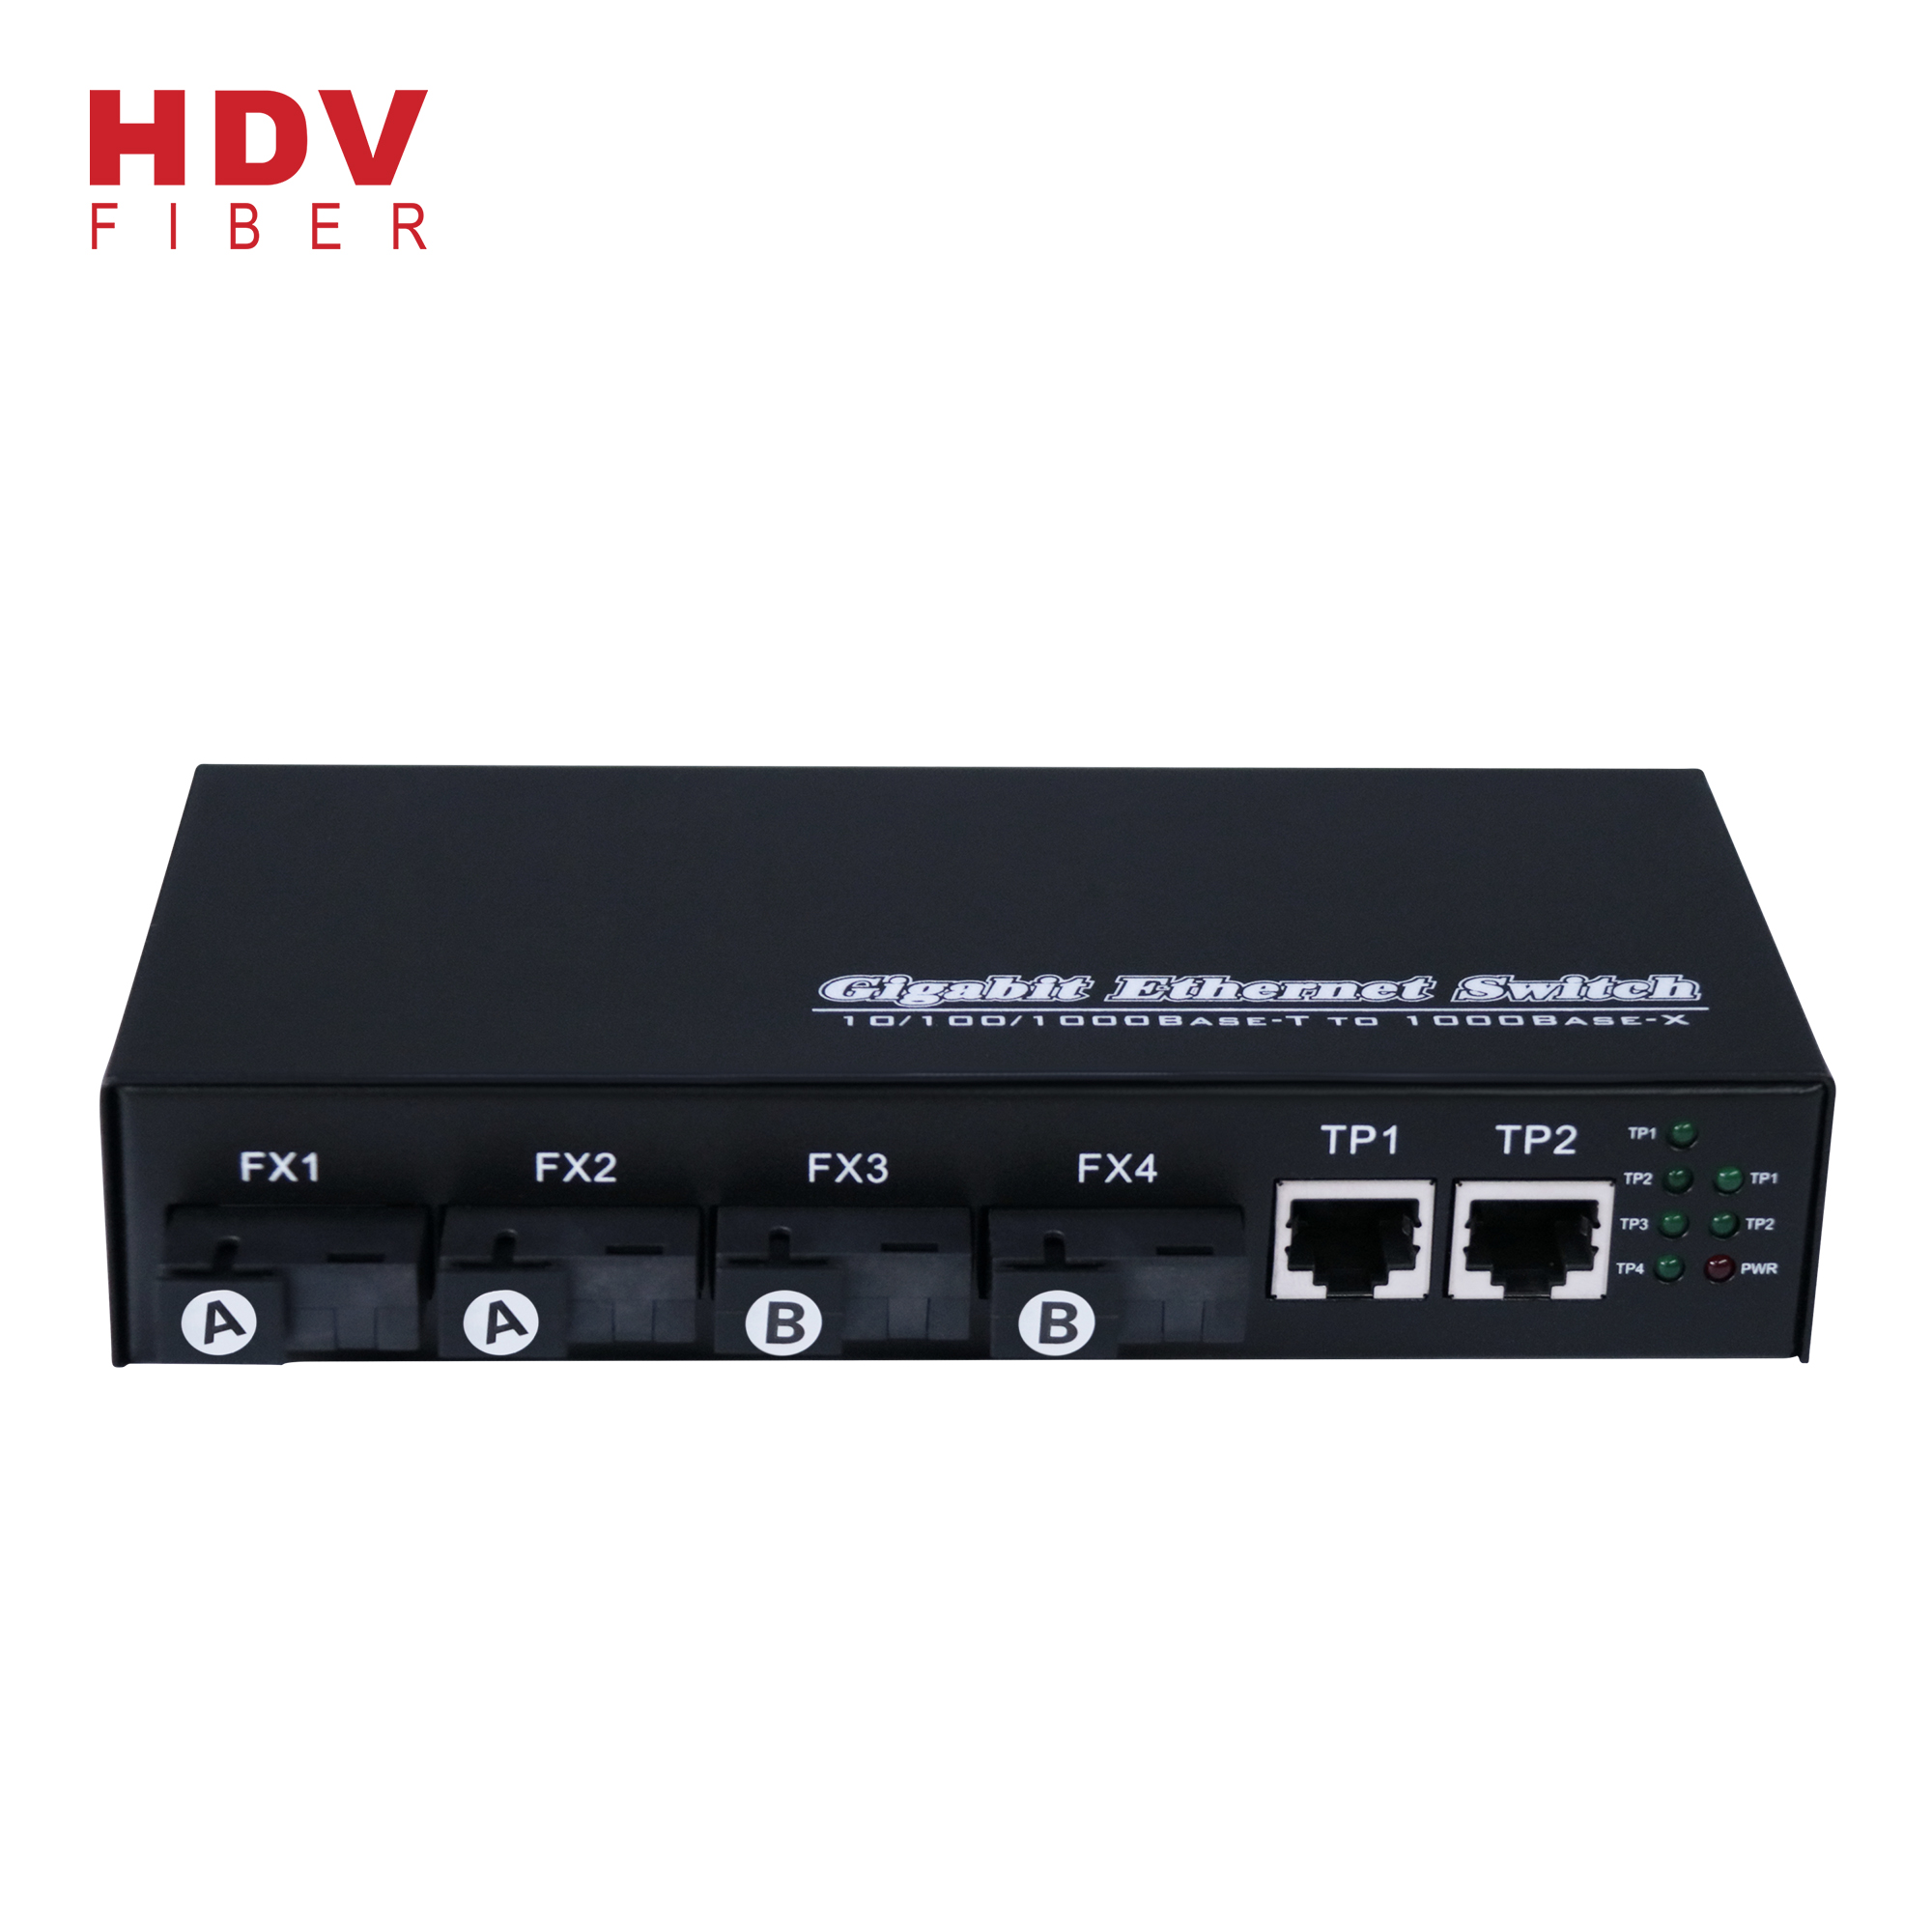 Lowest Price for Modem Optic Fiber - Industrial Managed Switch 2 RJ45 Port Media Converter Fast Ethernet Converter – HDV